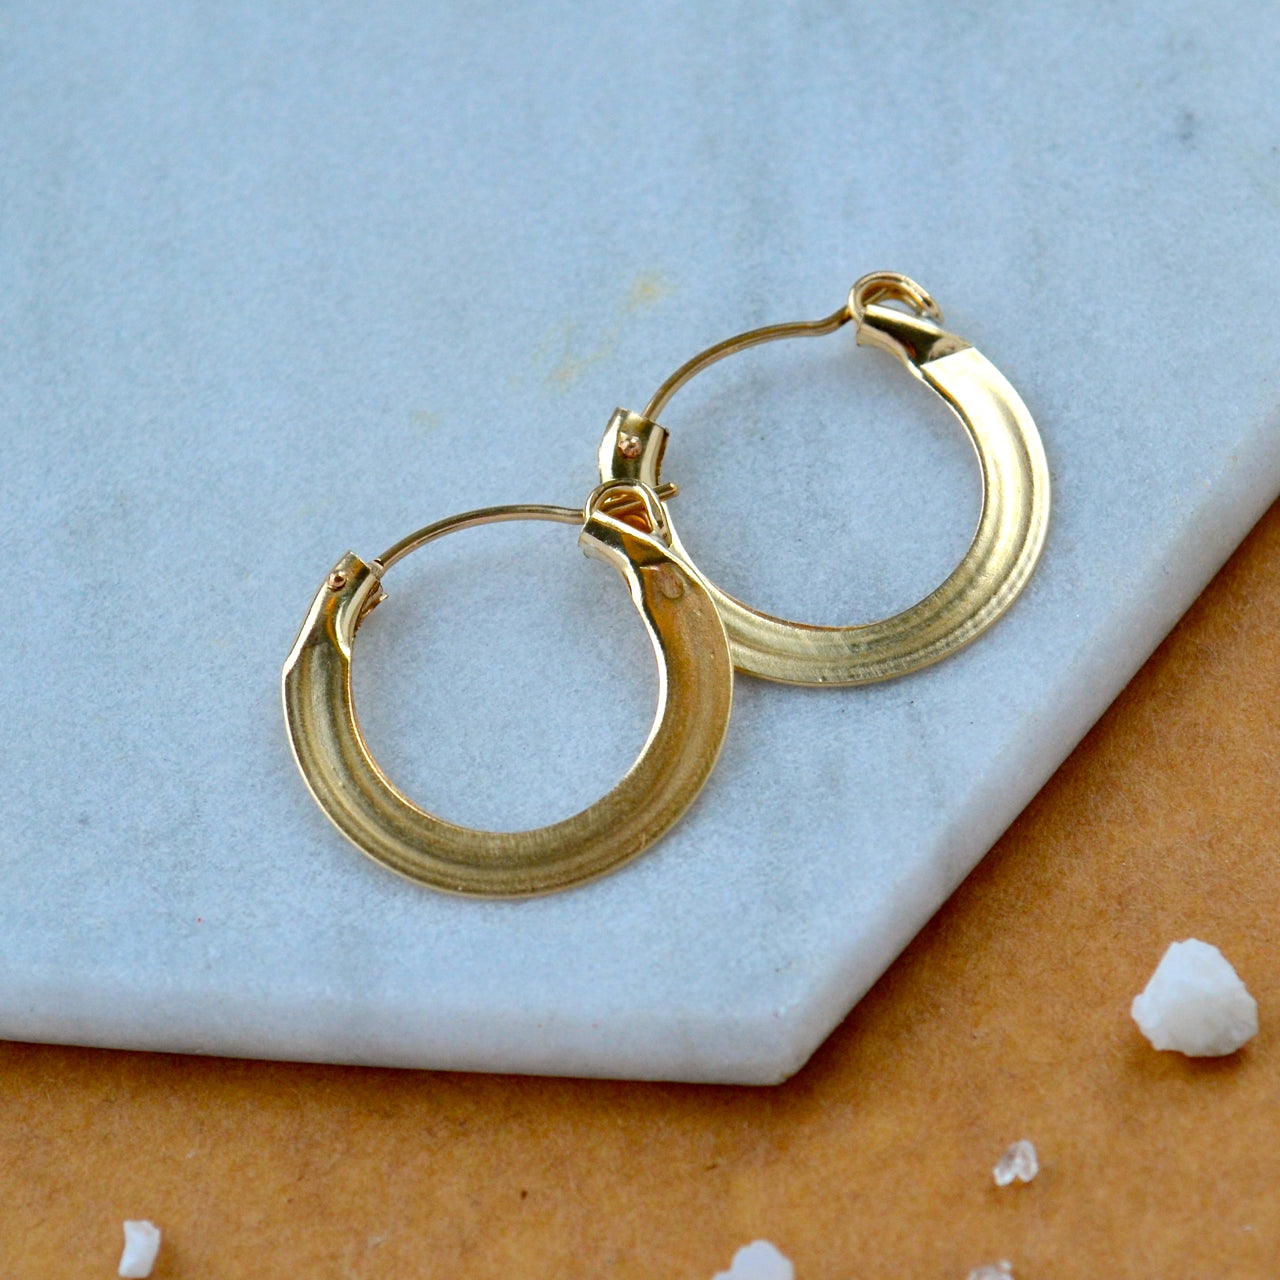 lifesaver hoops pressed flat hoop earrings hinged hoops thick flattened hoops gold filled simple hoop sustainable jewelry